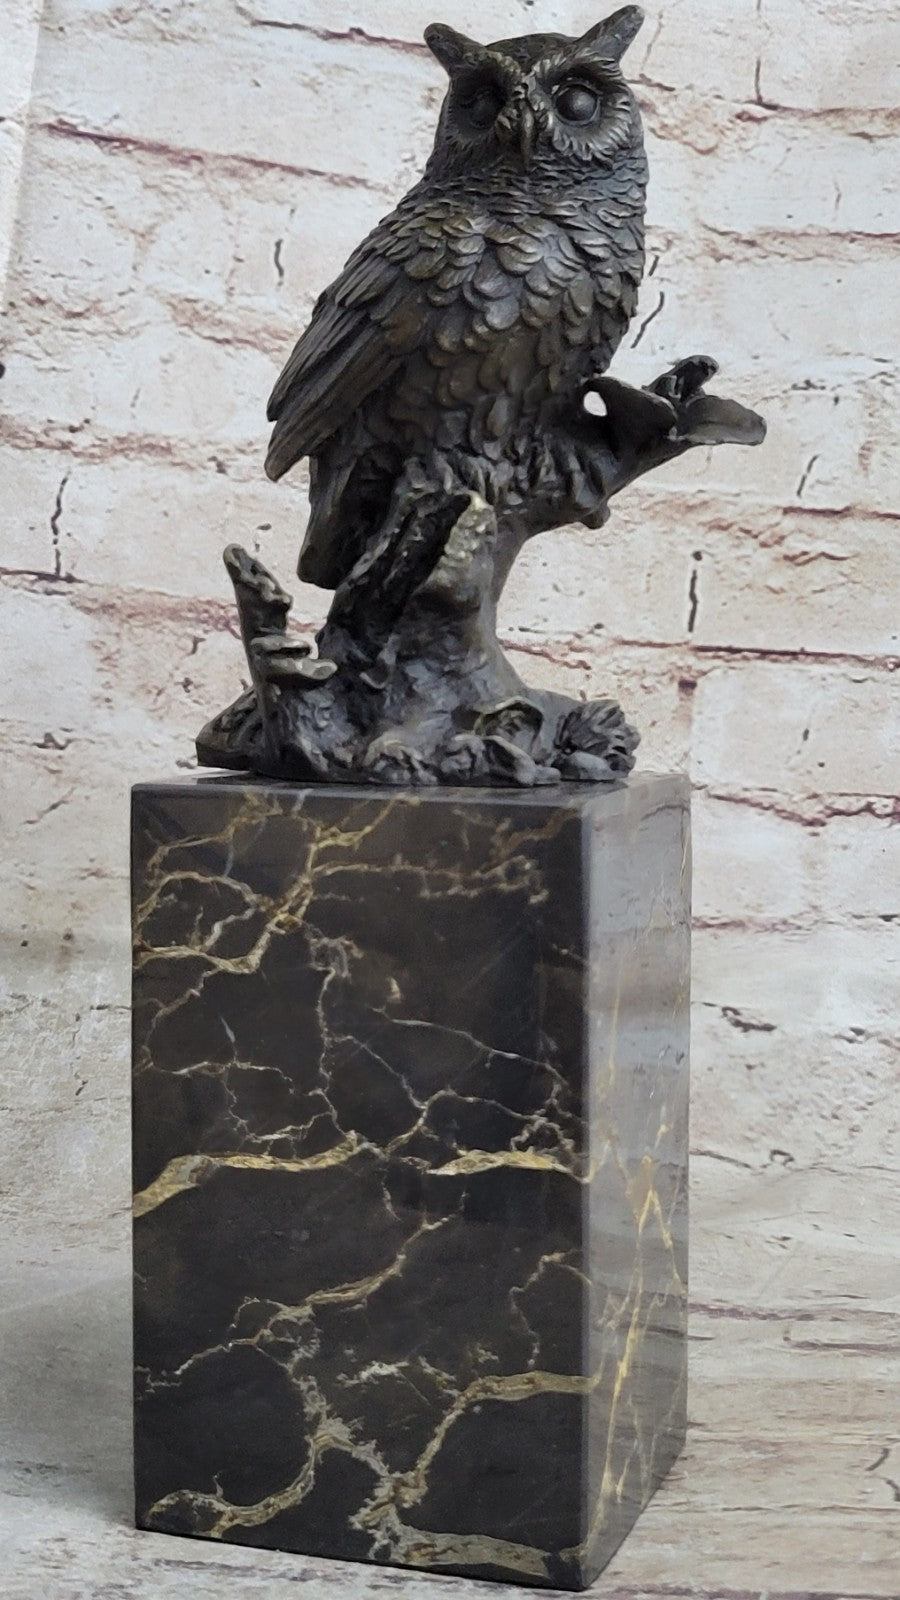 Hot Cast Indoor/Outdoor Garden Owl Bird Bronze Sculpture Statue Figurine Figure